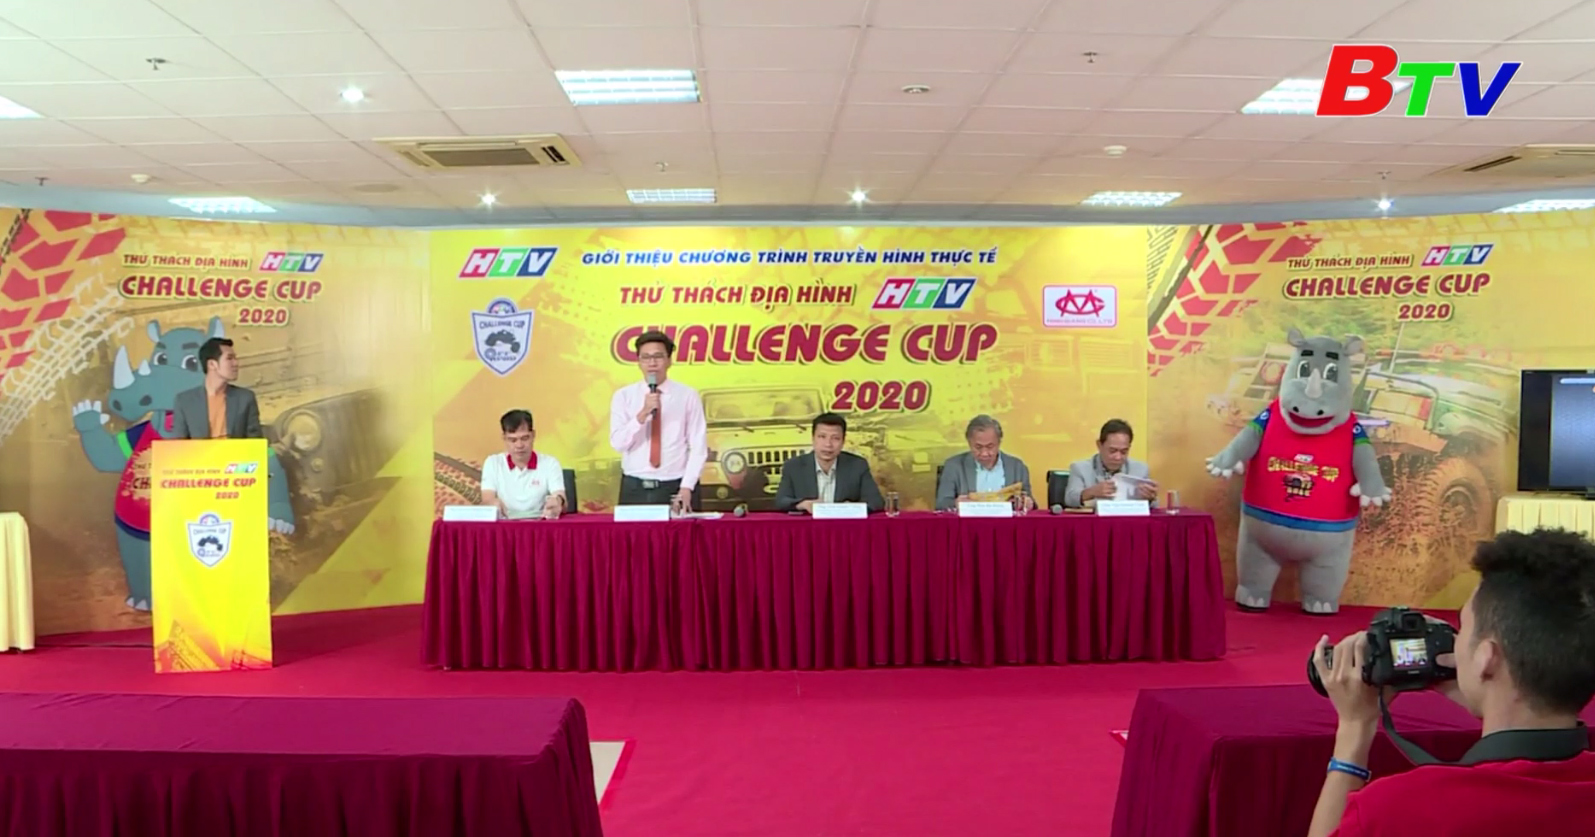 Chương trình truyền hình thực tế “Thử thách địa hình HTV Challenge Cup 2020”